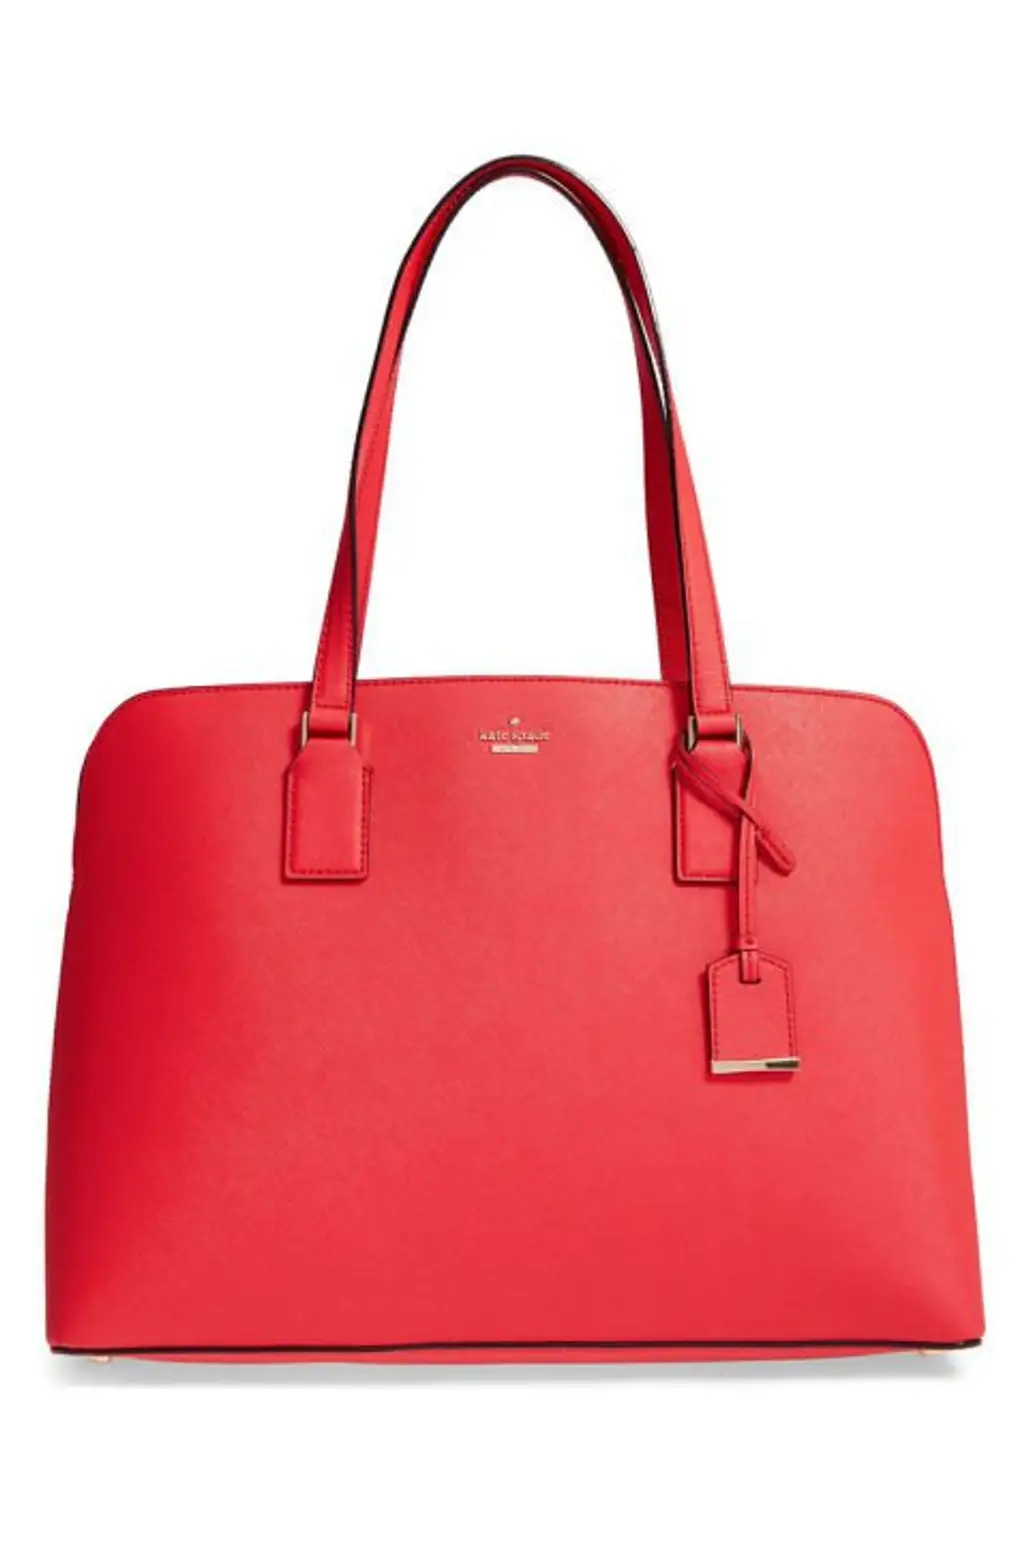 handbag, bag, shoulder bag, fashion accessory, leather,